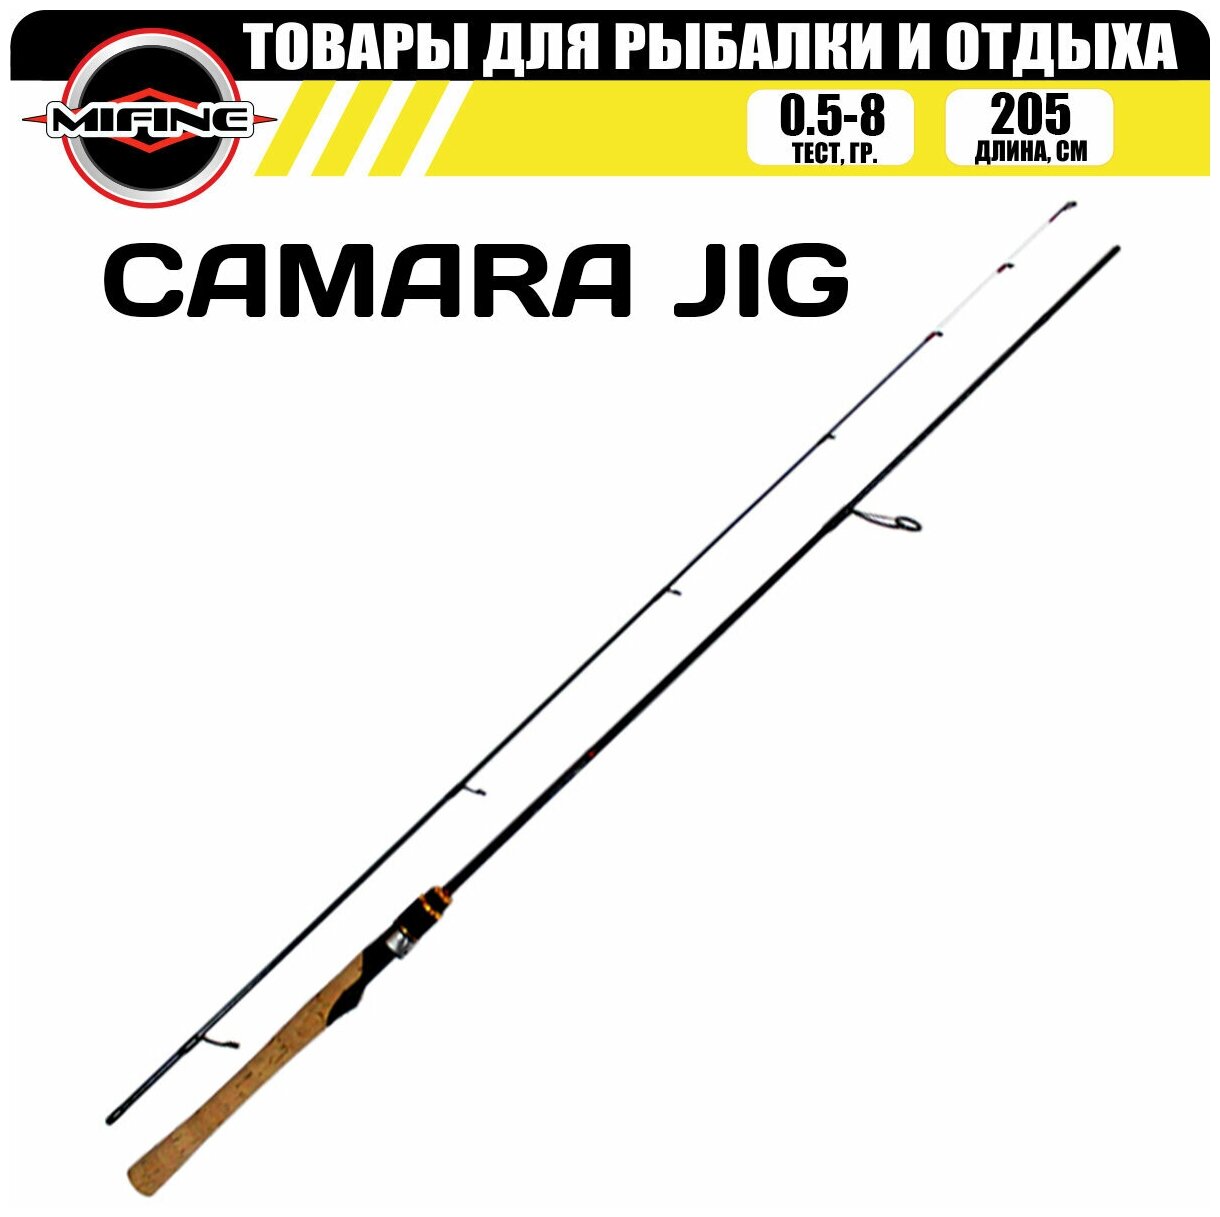 Спиннинг штекерный с быстрым строем MIFINE CAMARA JIG SPIN 2.05м (0.5-8гр) / для рыбалки / рыболовный